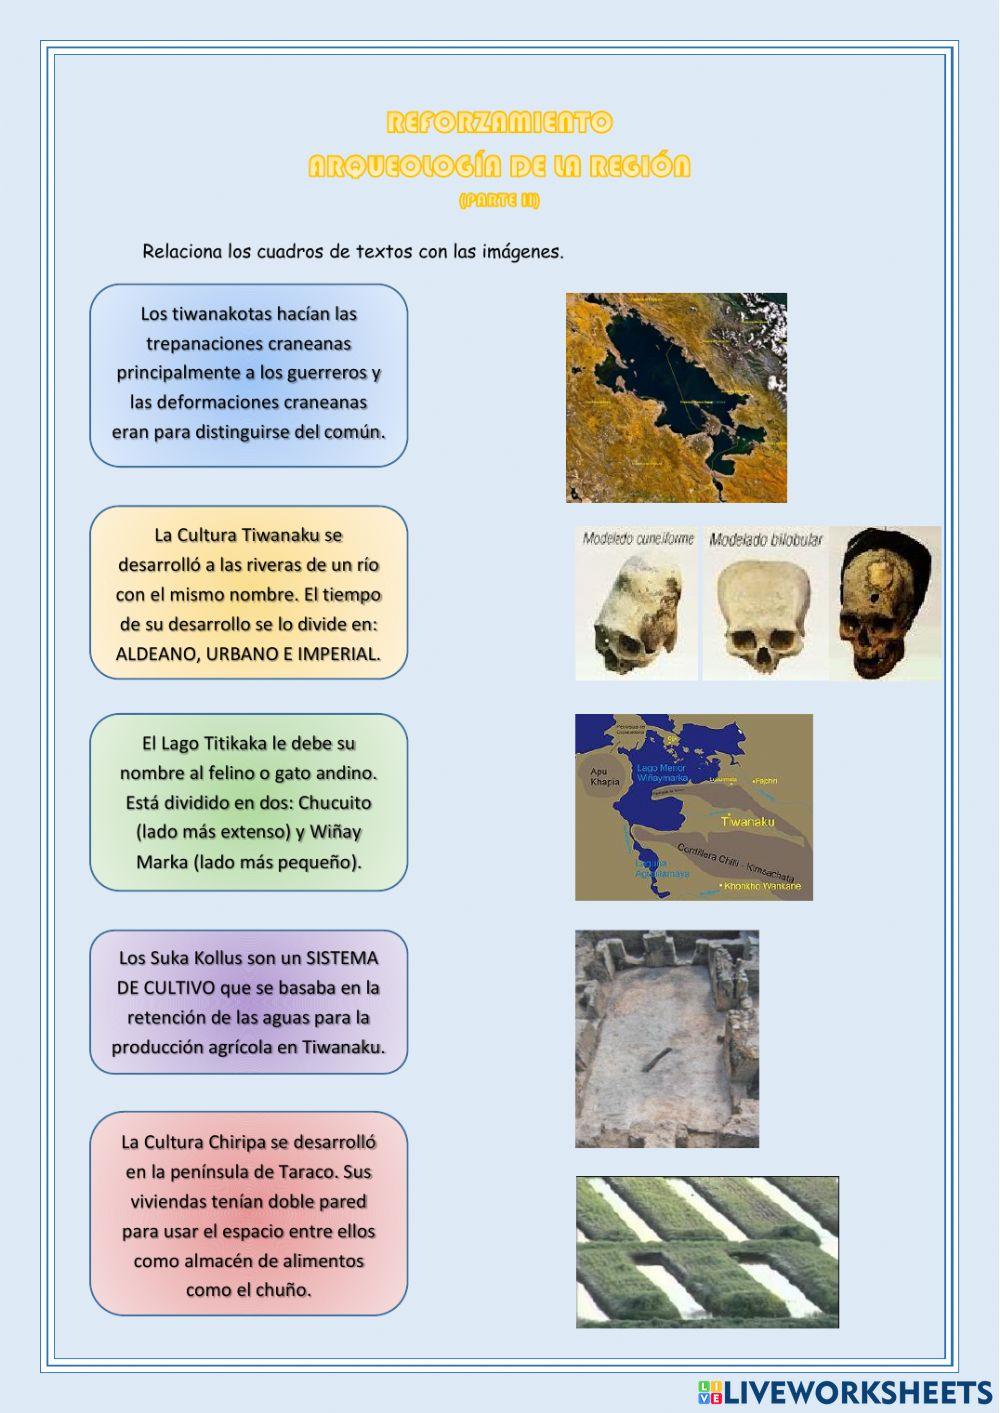 Culturas prehispánicas andinas I